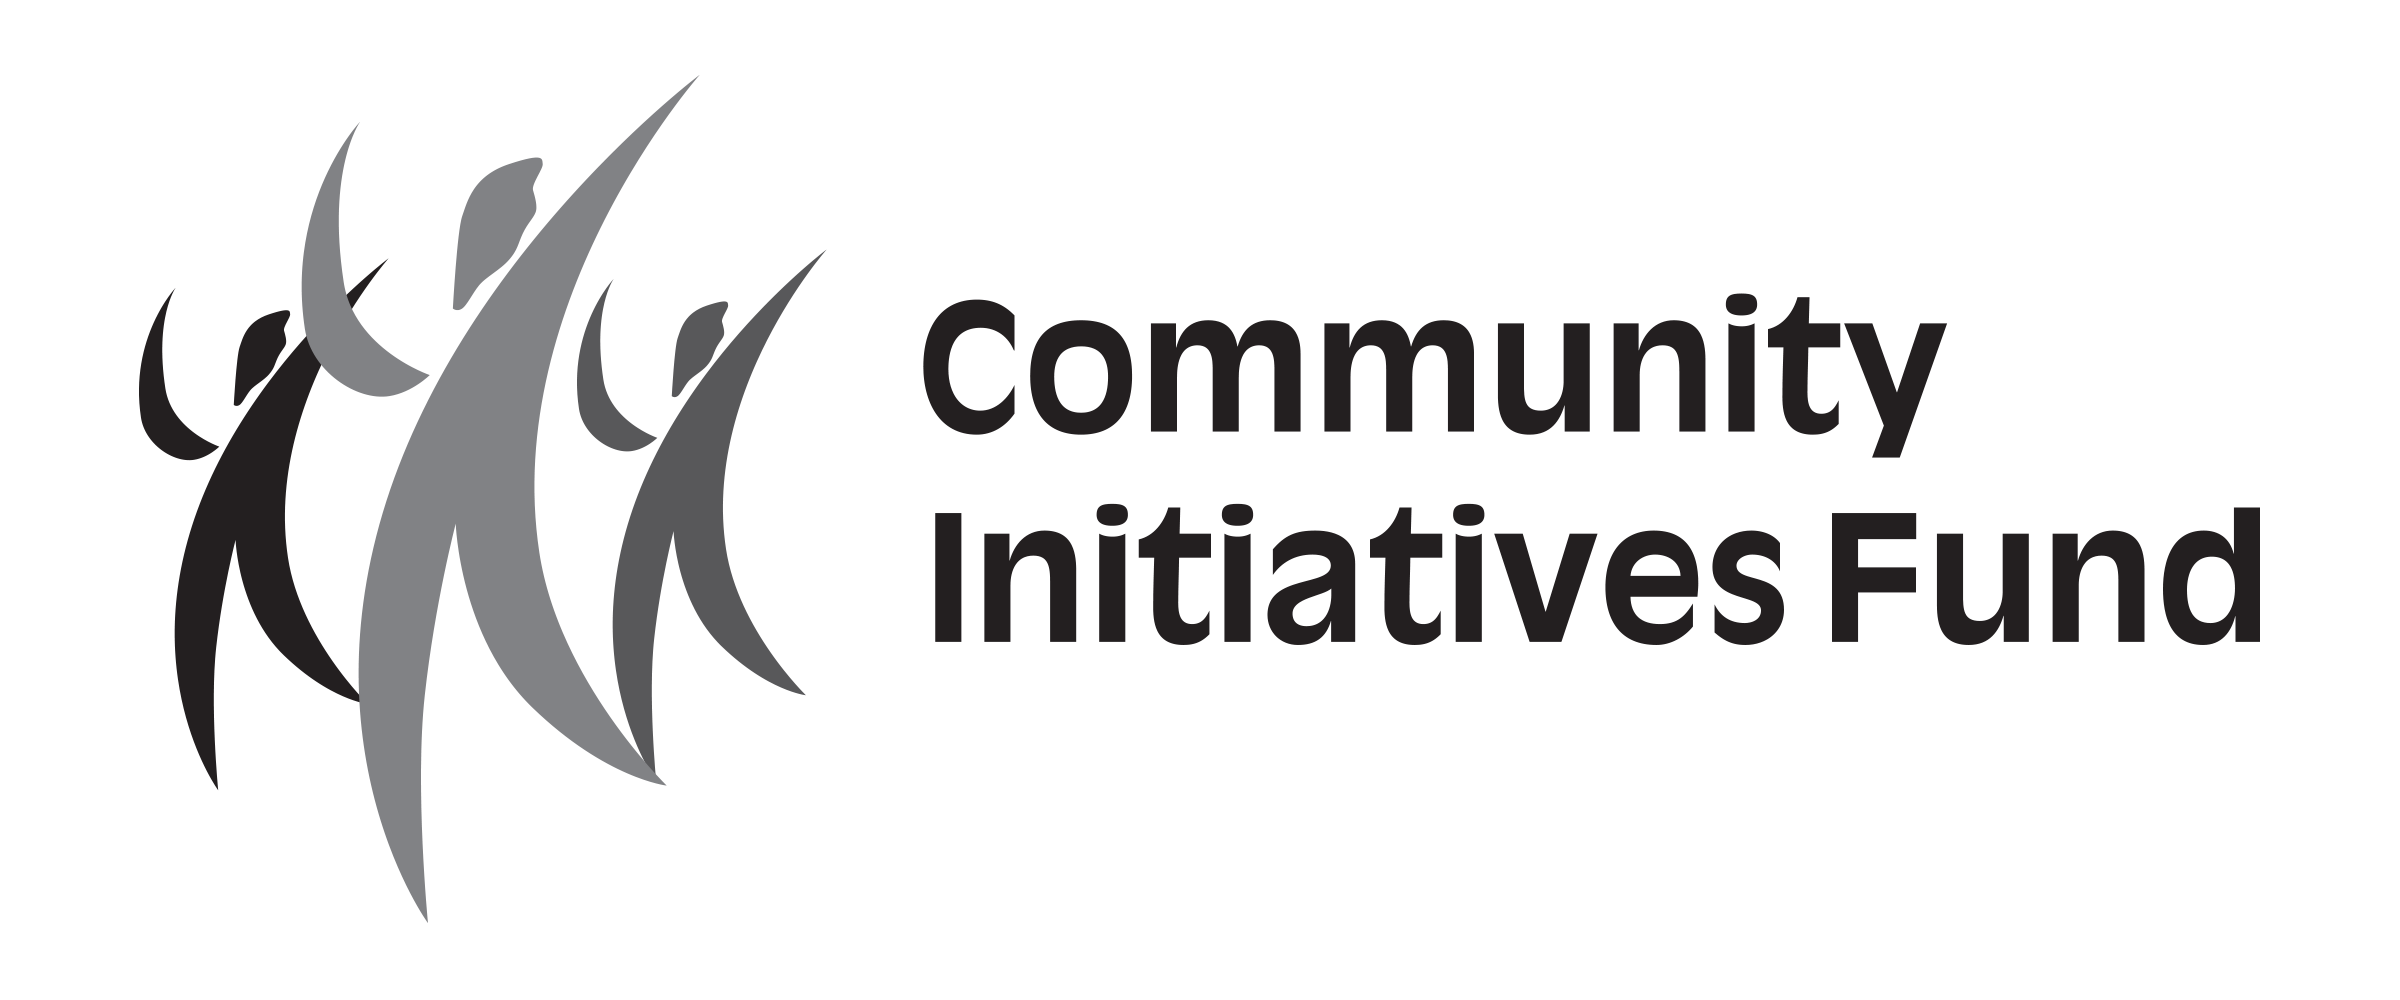 Community Initiatives Fund greyscale logo horizontal